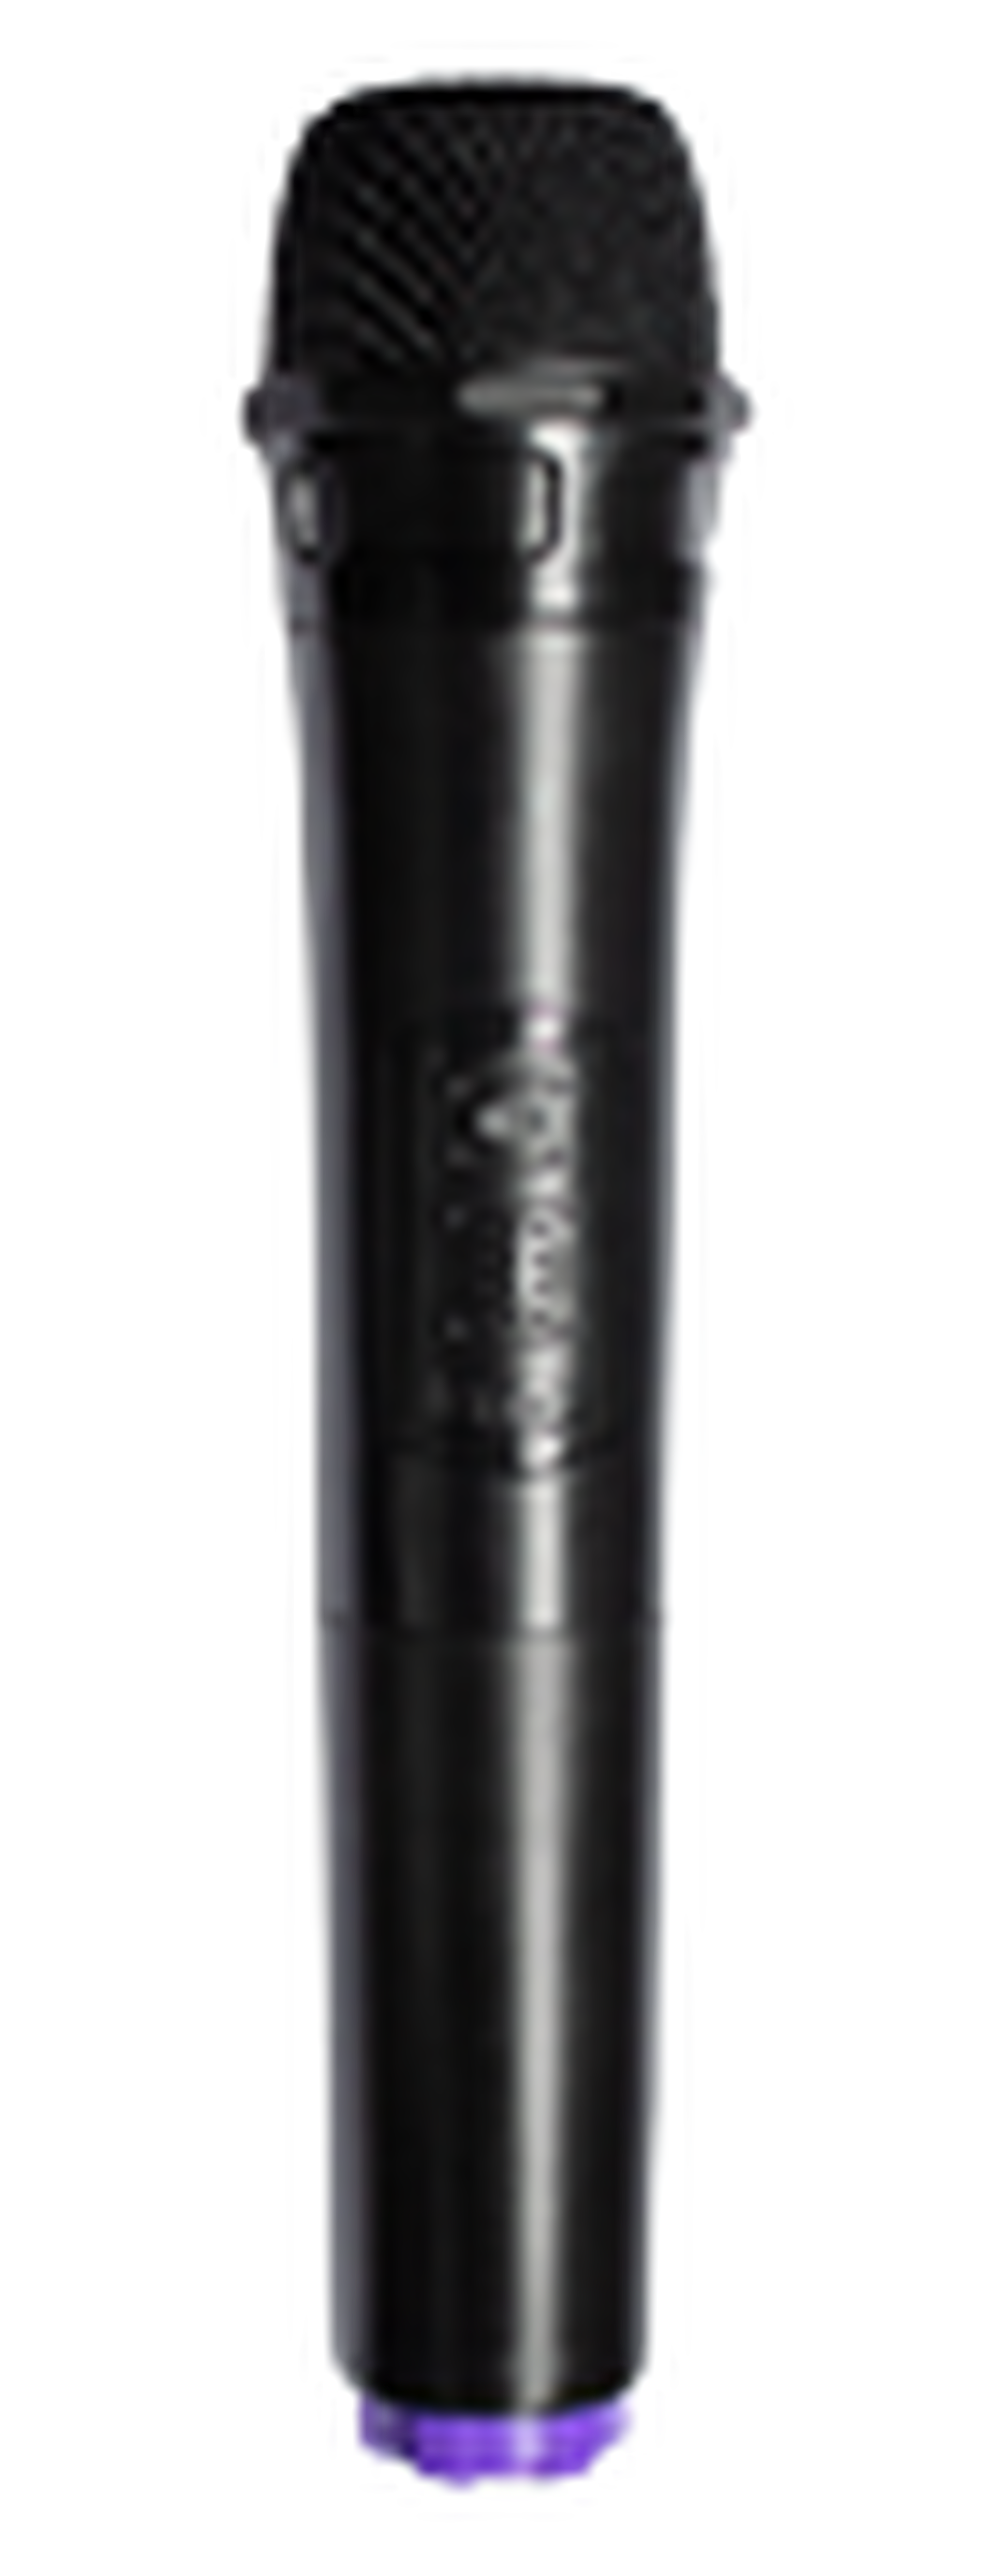 مكبر صوت محمول جروف لايت ماكس بقوة 80 واط وتقنية البلوتوث من ونسا (A210-08)